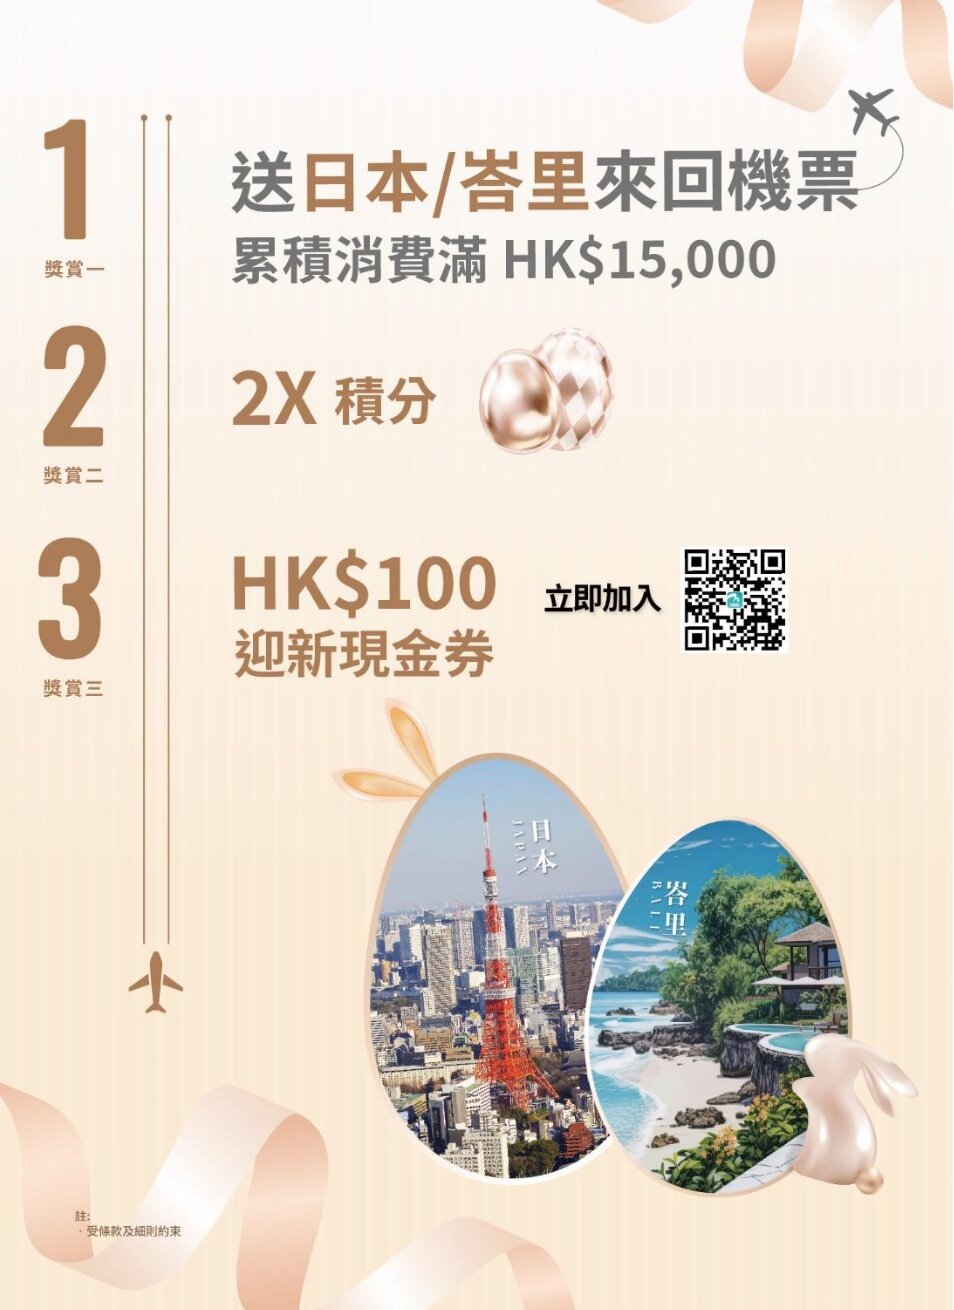 為HKairport Rewards會員獻上復活節「彩蛋」🐰日本/峇里機票&2倍積分&迎新獎賞 驚喜源源不絕讓你歡樂過節💝